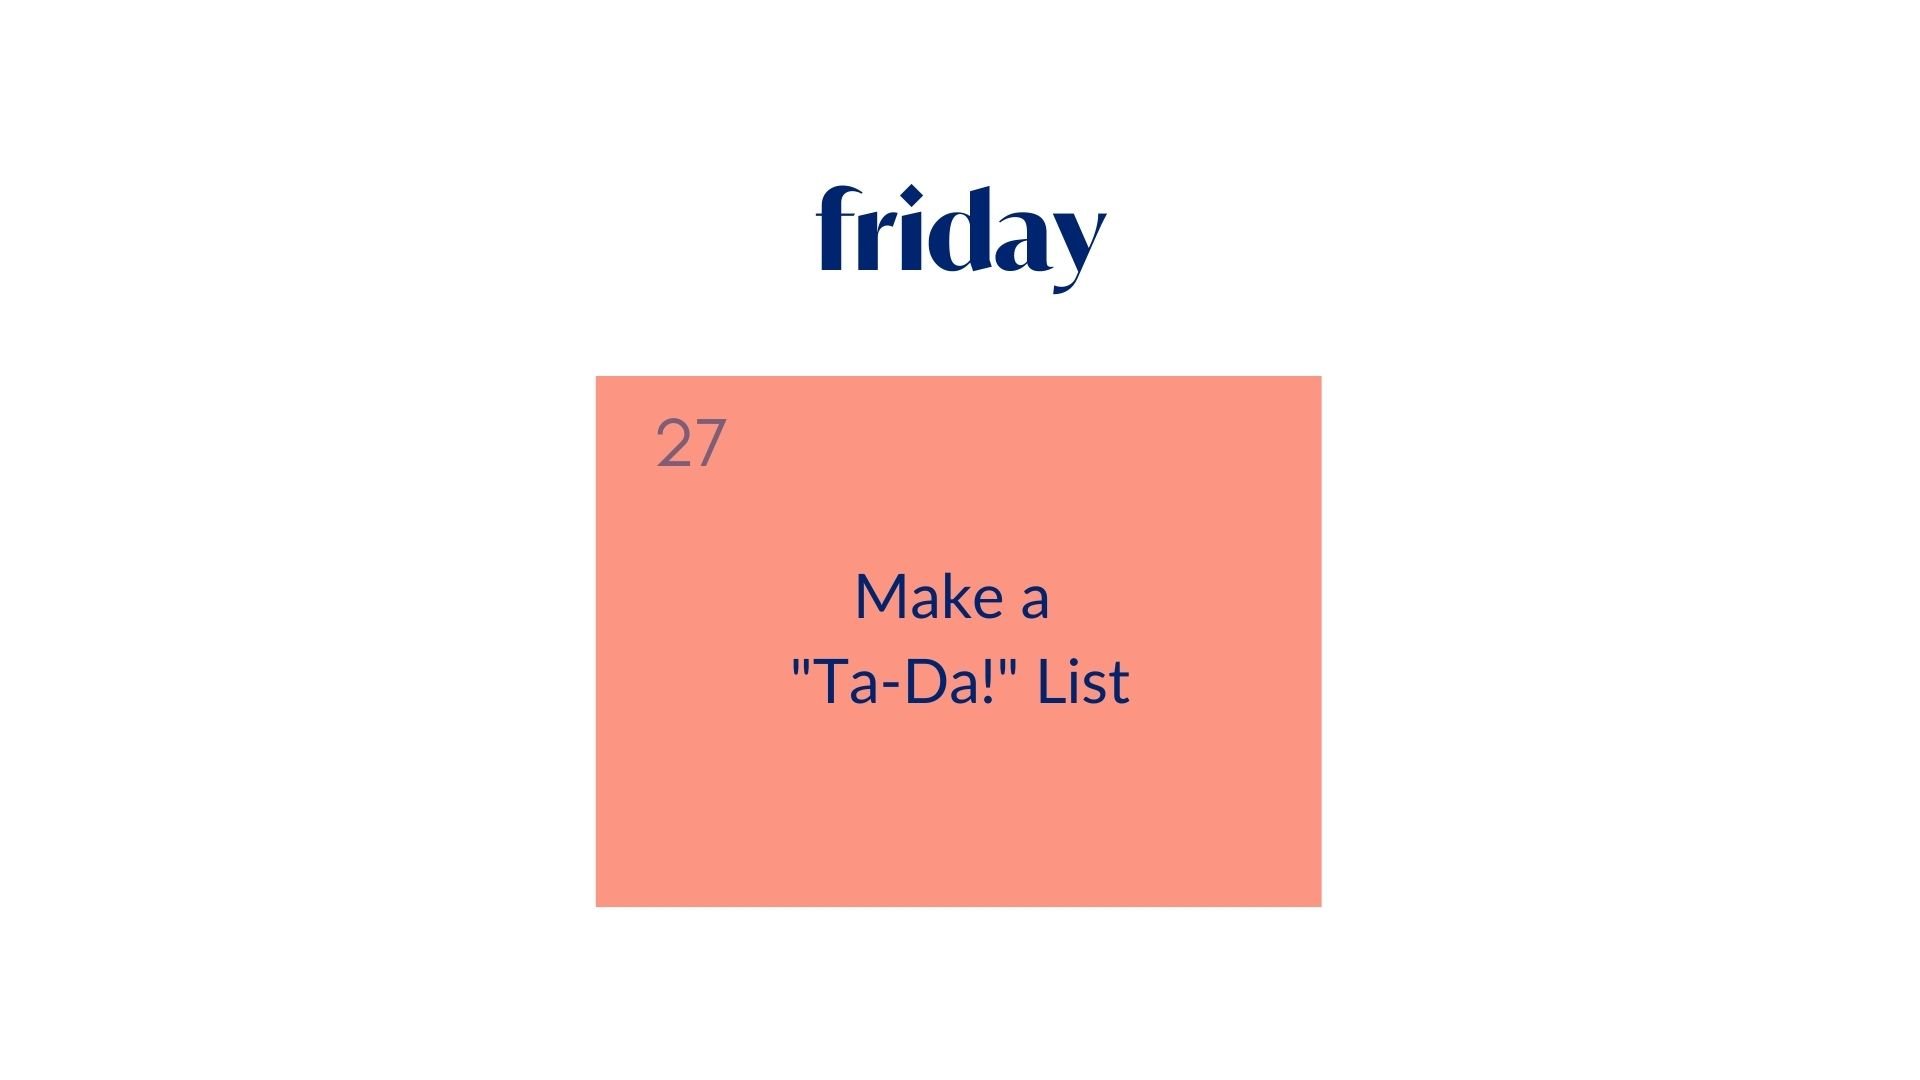 Day 27: Make a "Ta-Da!" List